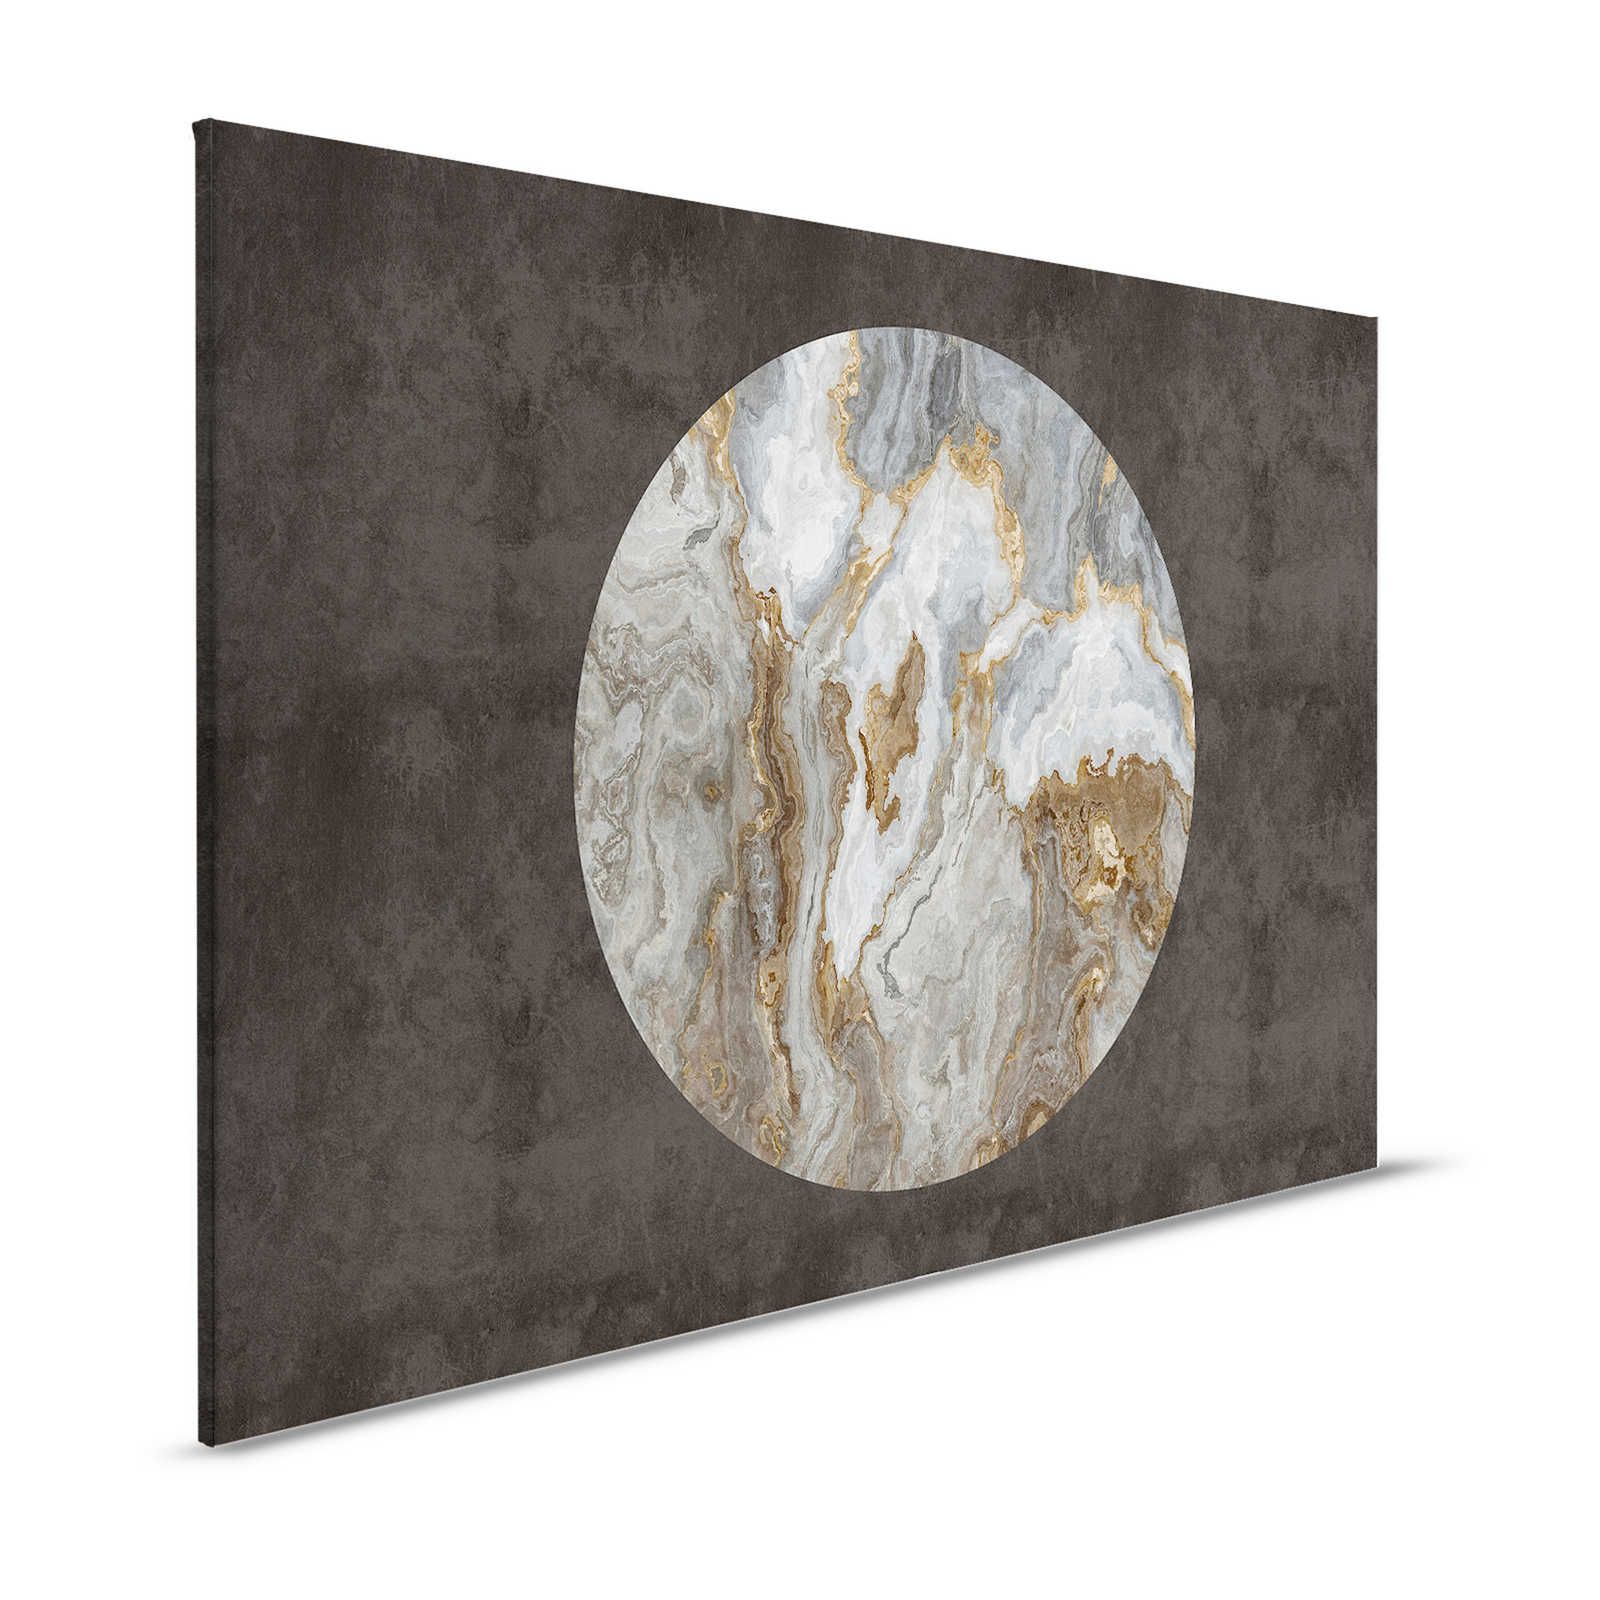 Luna 2 - Quadro su tela di marmo Cerchio di pietra davanti all'intonaco nero - 1,20 m x 0,80 m
